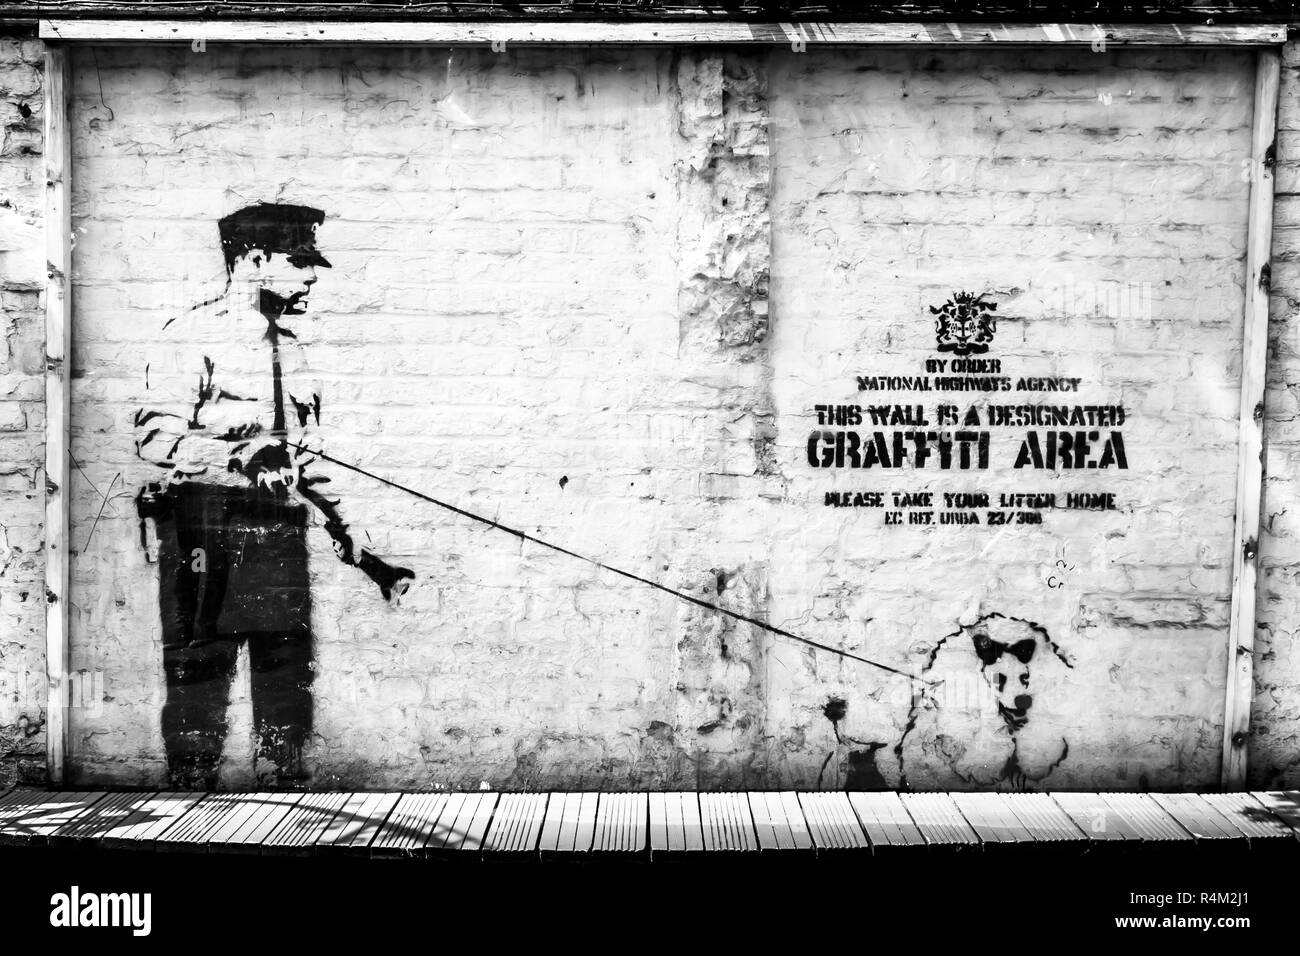 Banksy Street Art a Londra. Per ordine Agenzia Nazionale autostrade. Questa è un'area Graffiti designata. Si prega di portare la vostra lettiera a casa Foto Stock